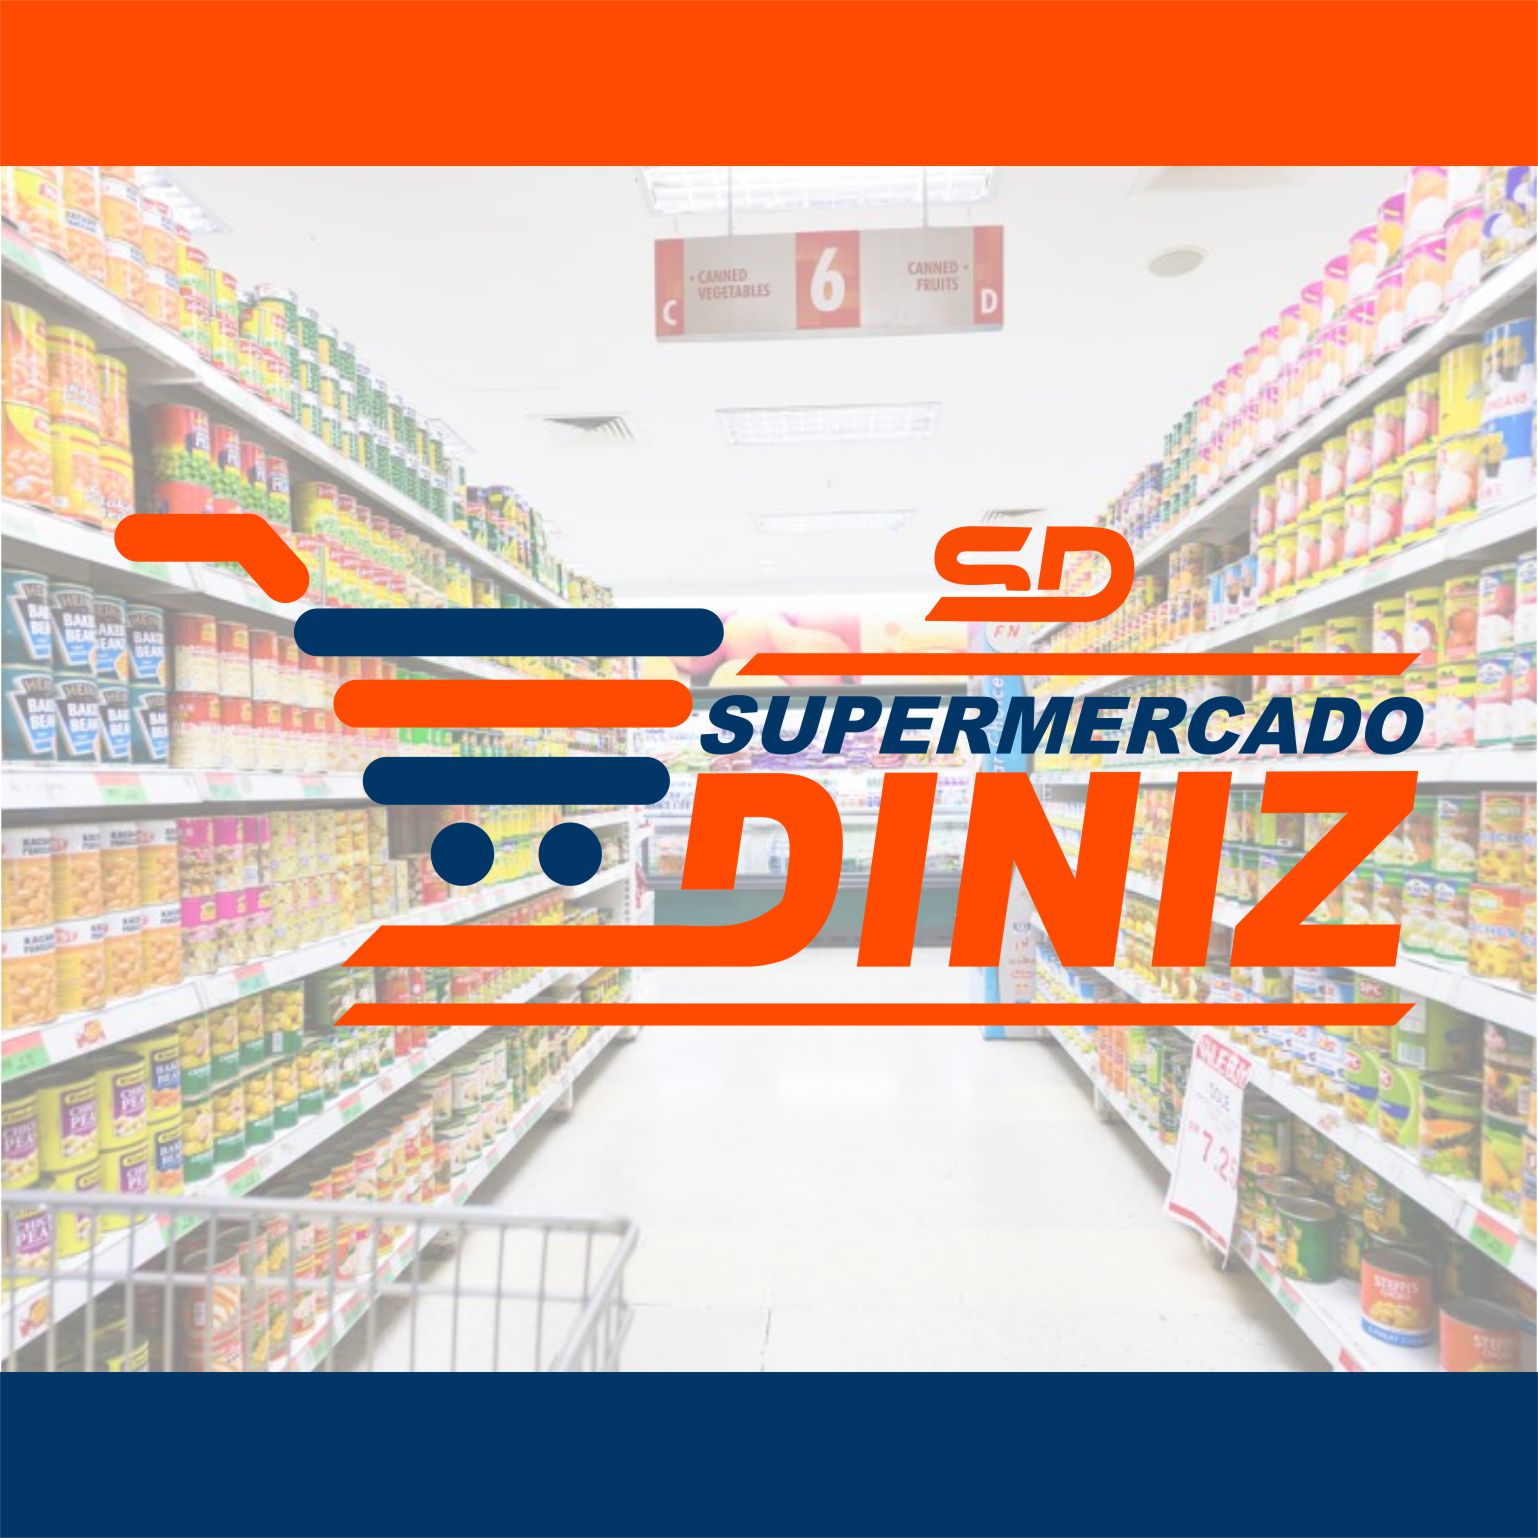 Supermercado Diniz